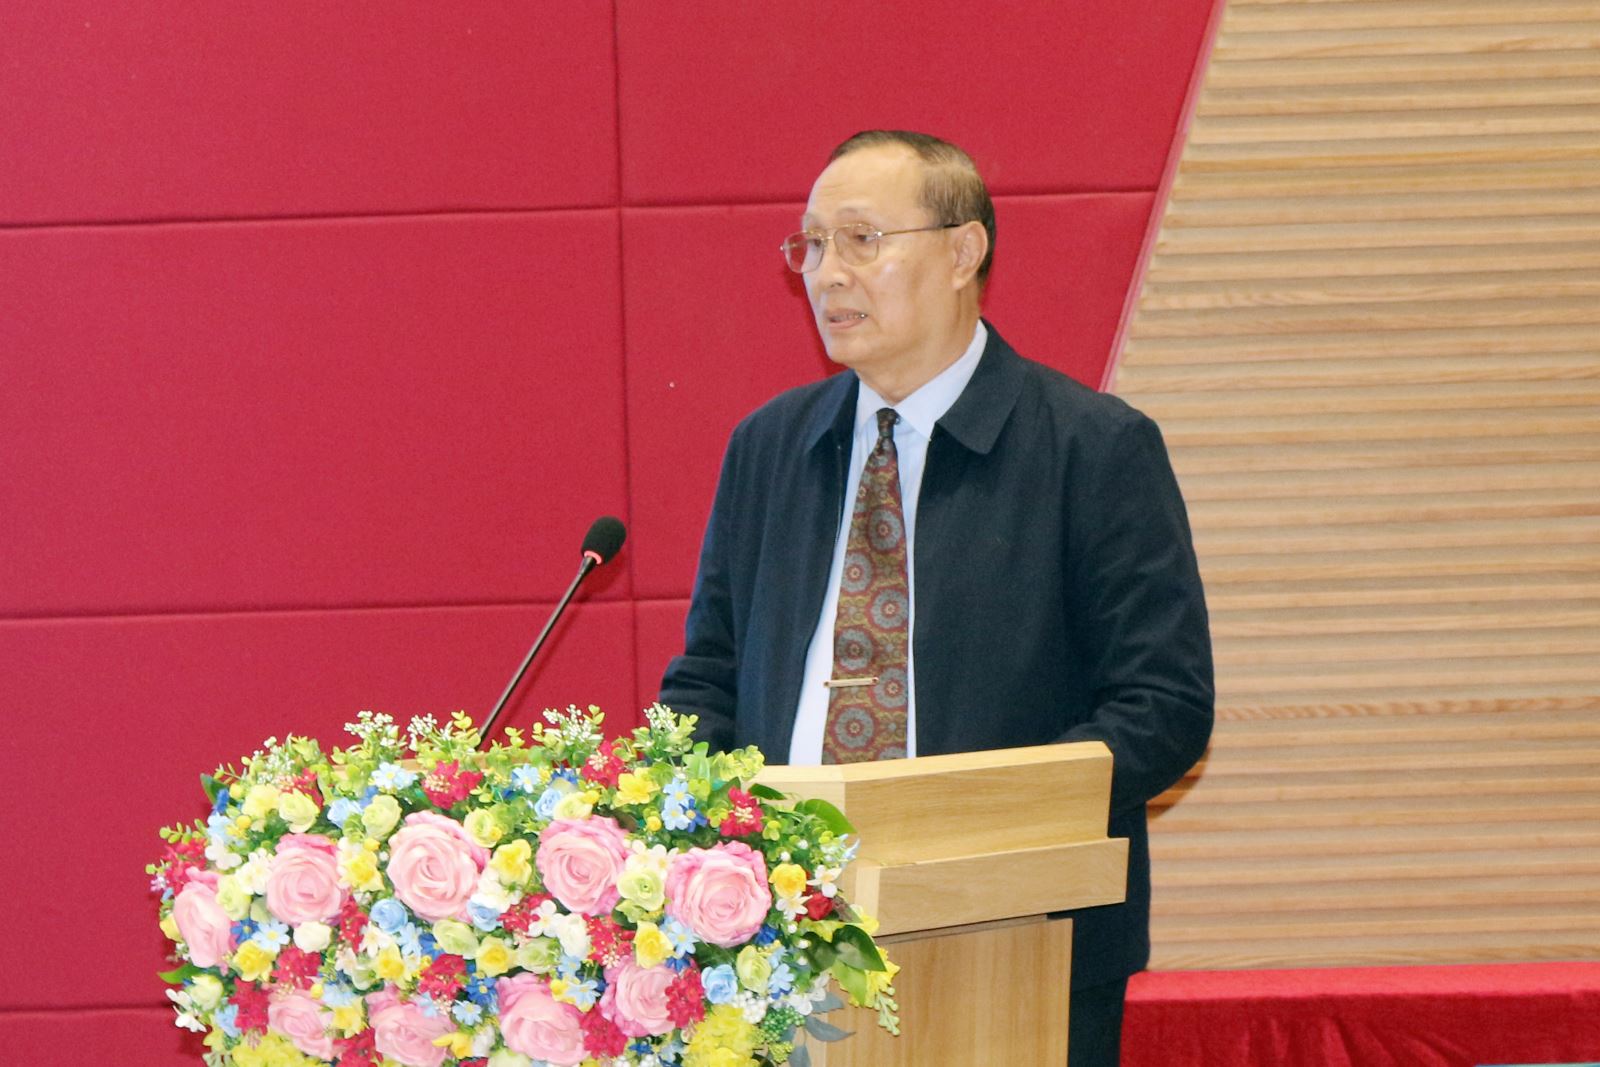  Tiến sĩ Nguyễn Thanh Dũng – Phó Hiệu trưởng Trường Đại học Cửu Long phát biểu tại buổi làm việc.